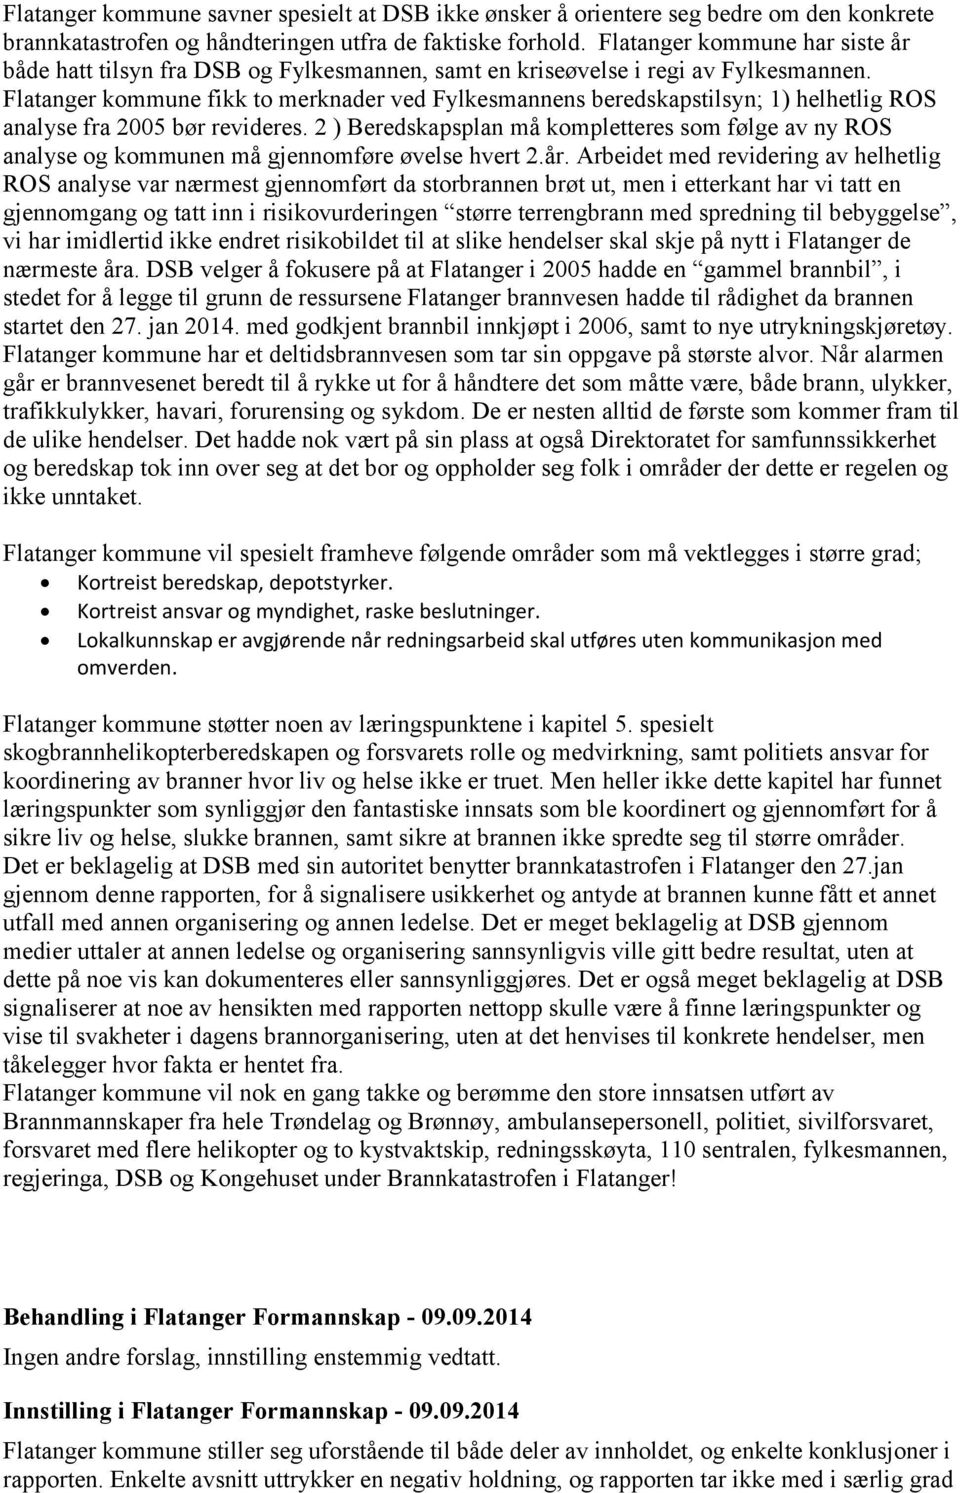 Flatanger kommune fikk to merknader ved Fylkesmannens beredskapstilsyn; 1) helhetlig ROS analyse fra 2005 bør revideres.